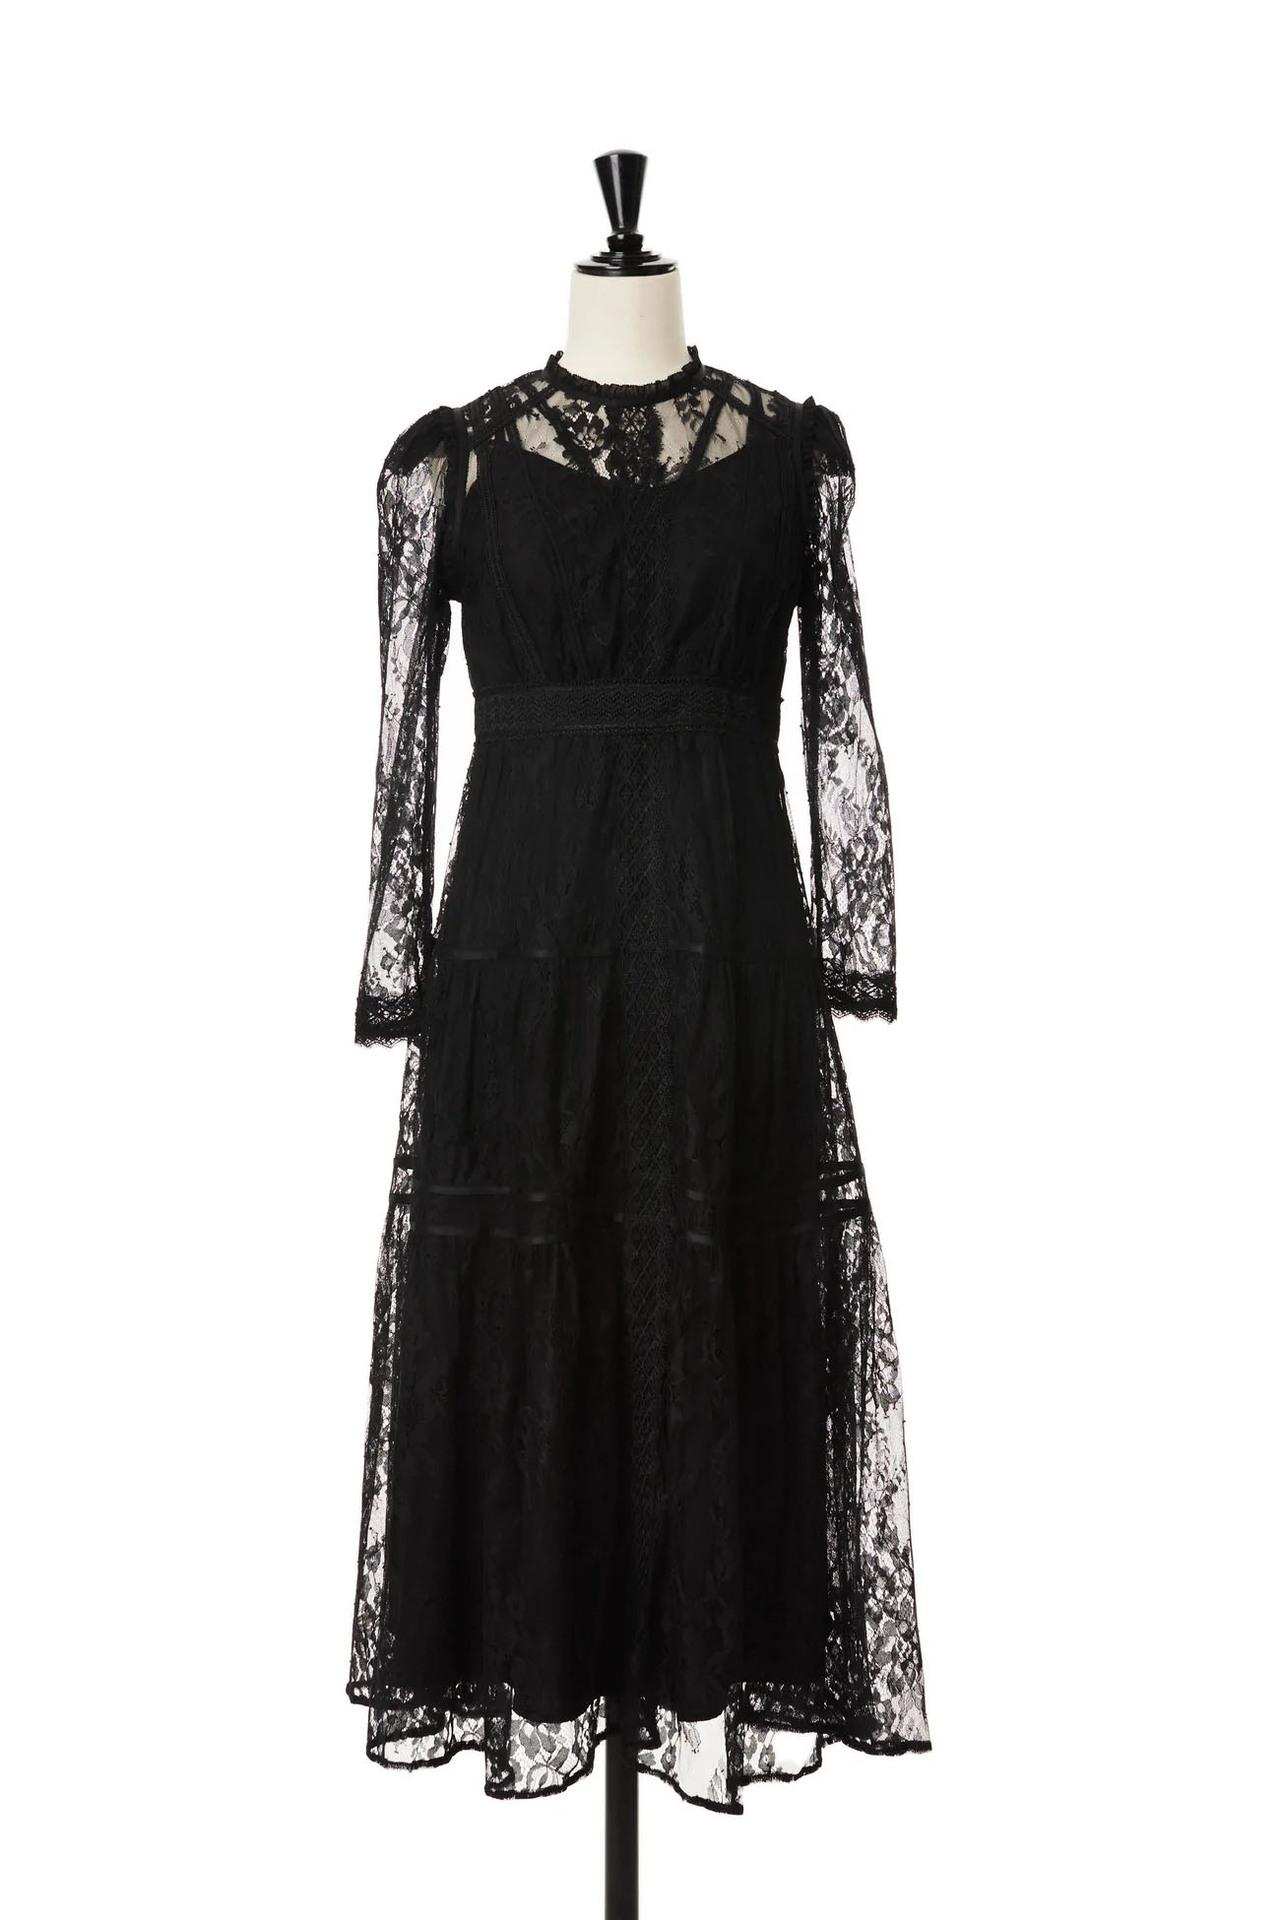 国内在庫Jupiter Lace-Trimming Dress/black/M ワンピース